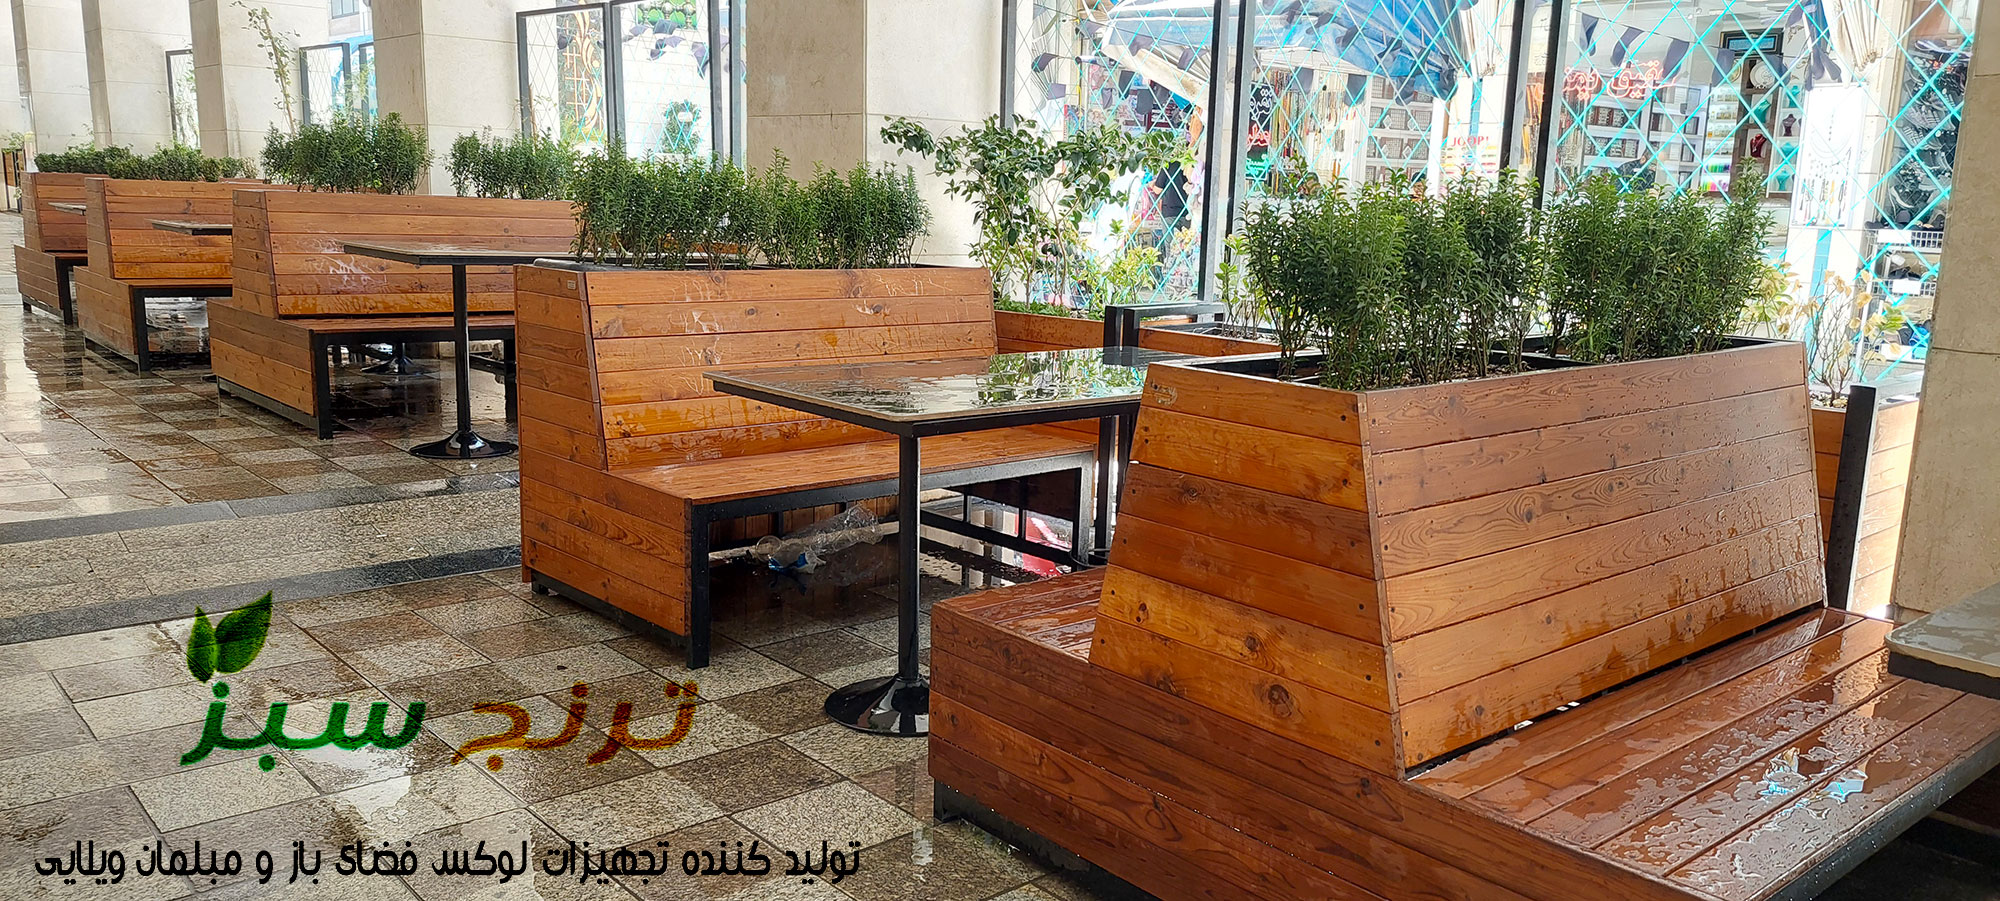 نیمکت پشتی دار از چوب ترموود و فلز برای پیاده رو و کنار خیابان رستوران و محوطه باز فست فود و روفگاردن که میز جلو آن قرار میگیرد .